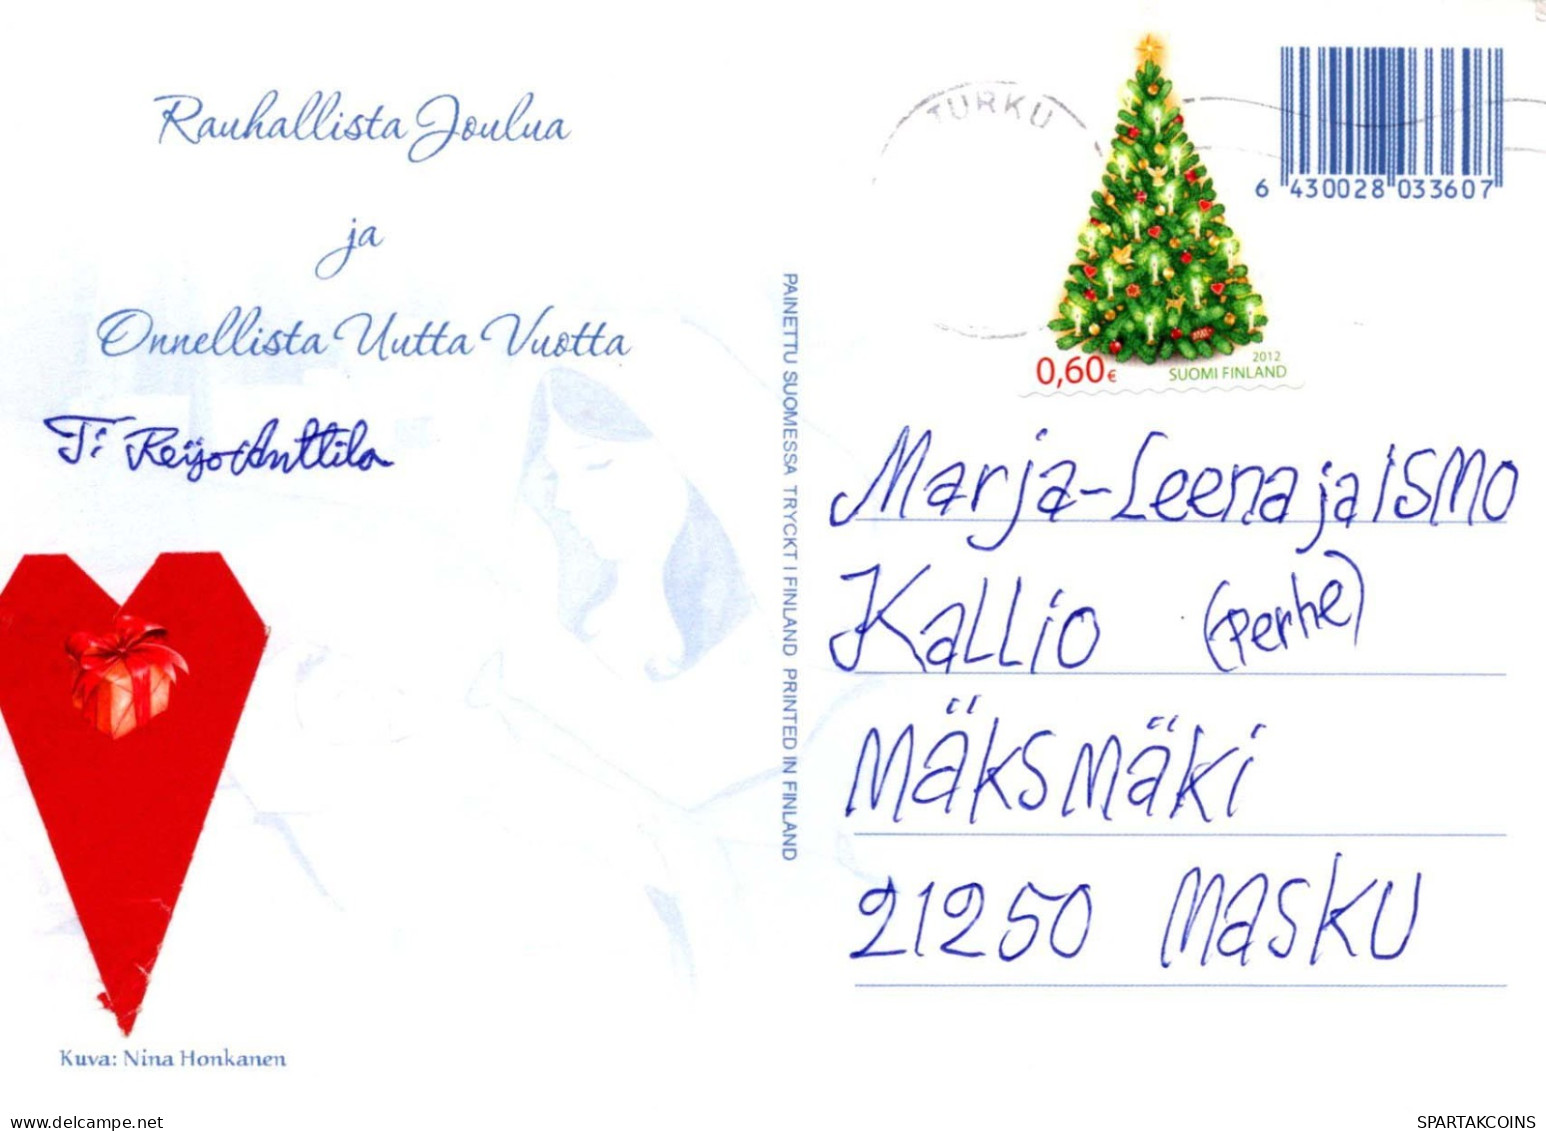 Virgen María Virgen Niño JESÚS Navidad Religión Vintage Tarjeta Postal CPSM #PBP738.A - Vierge Marie & Madones